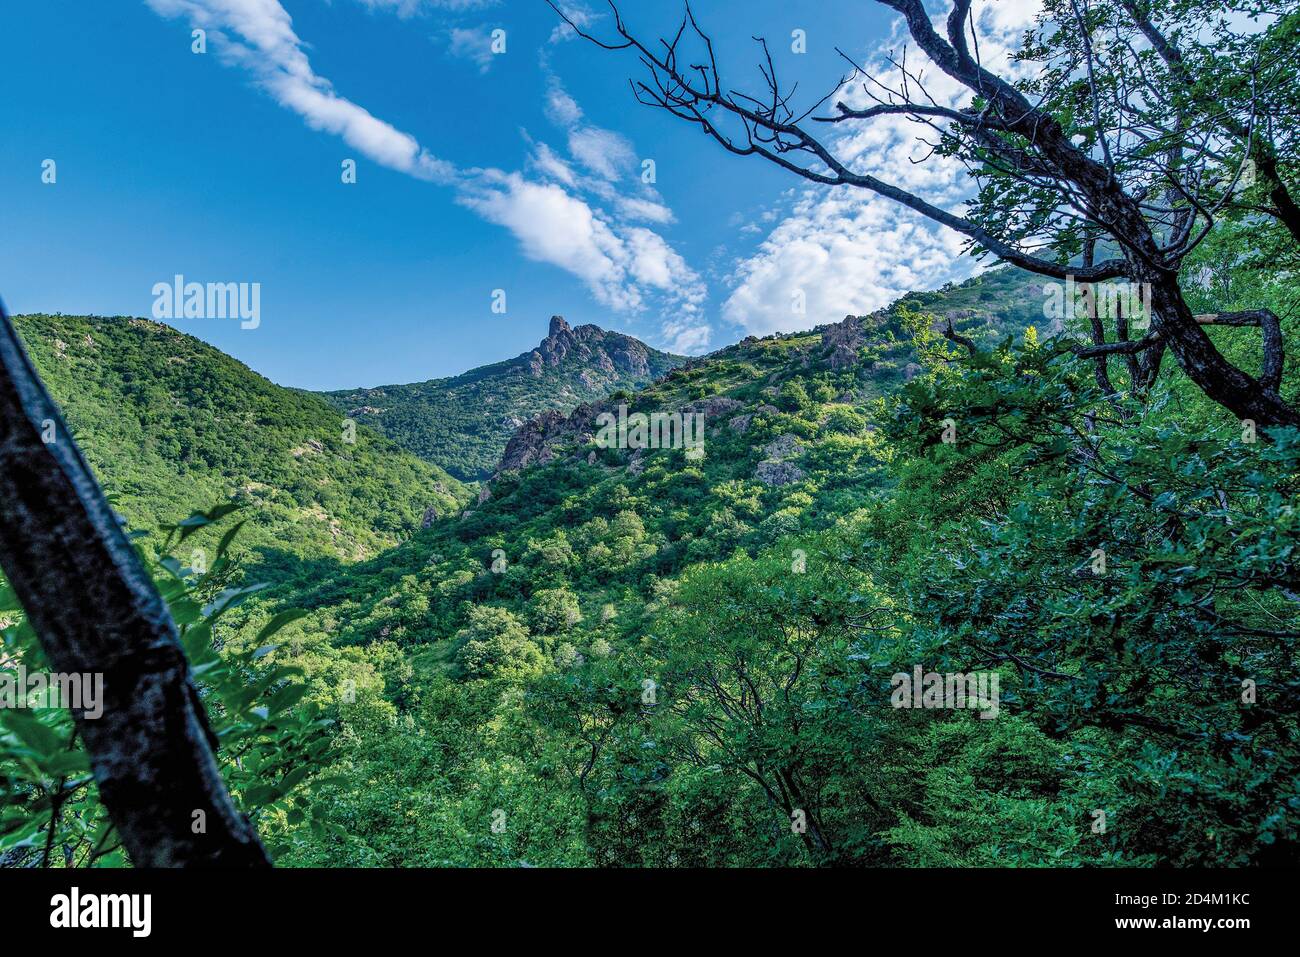 Verdi colline rivelando una montagna rocciosa vetta vicino alla città di Sliven in Bulgaria. 'Sinite Kamani' ('rocce blu") Mountain National Park. Foto Stock